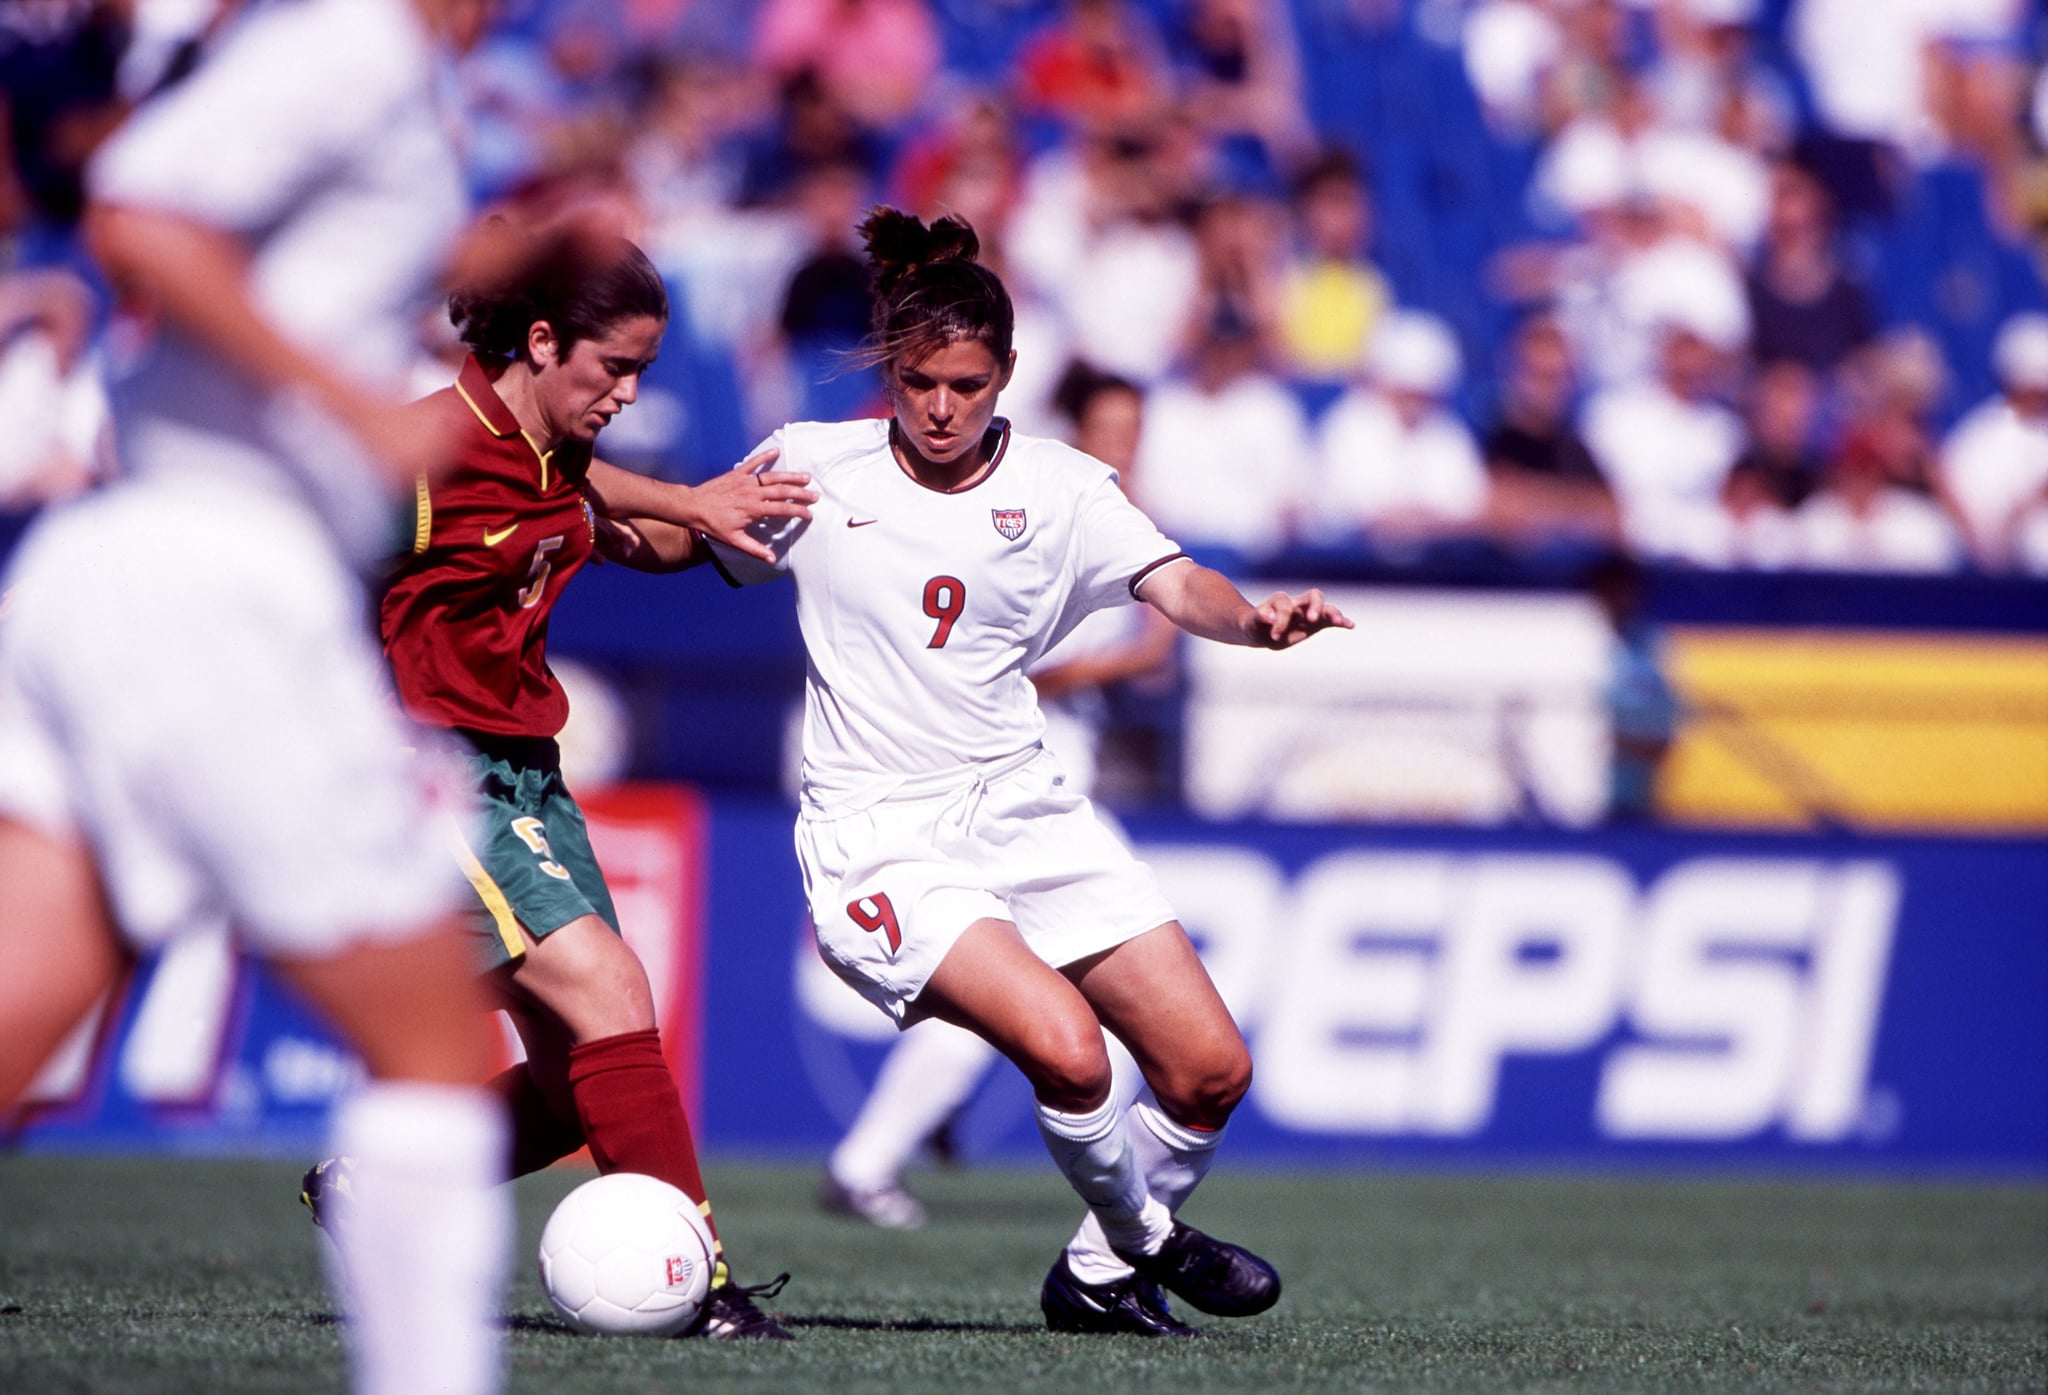 1999 : Mia Hamm # 9 des États-Unis en action lors du match de l'équipe féminine de football des États-Unis contre le Portugal à Ft.  Lauderdale, Floride.  (Photo de John Biever/Icon Sportswire via Getty Images)